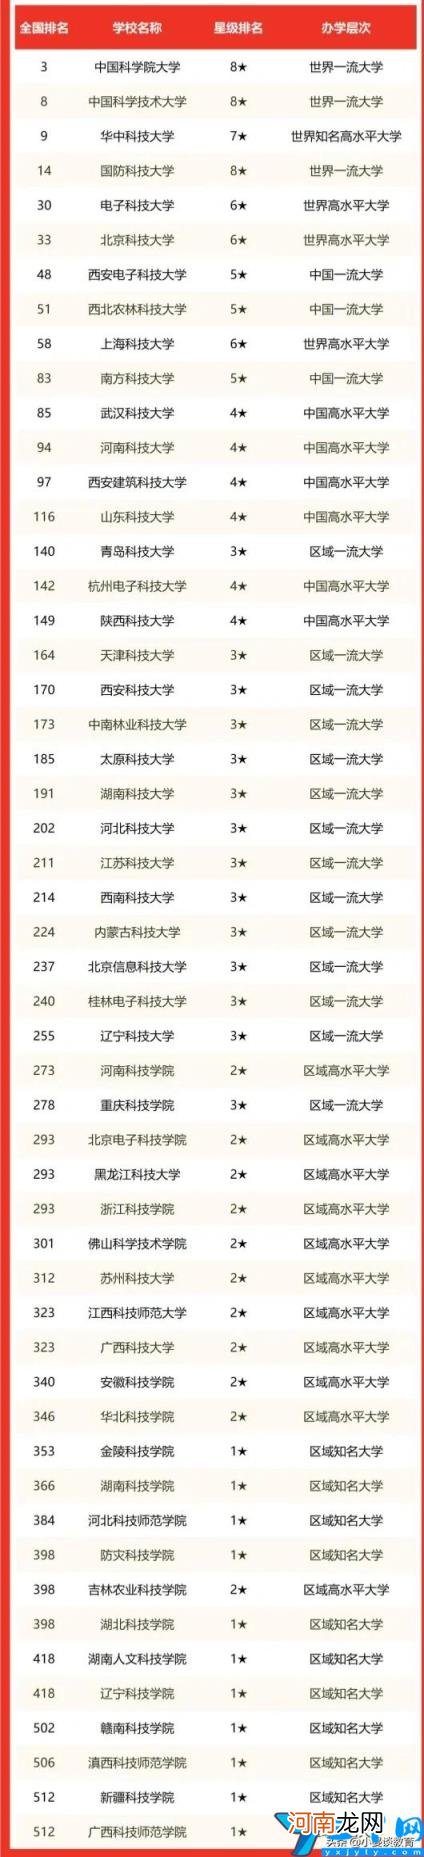 中国科技大学排名 中国科技大学排名世界第几排名